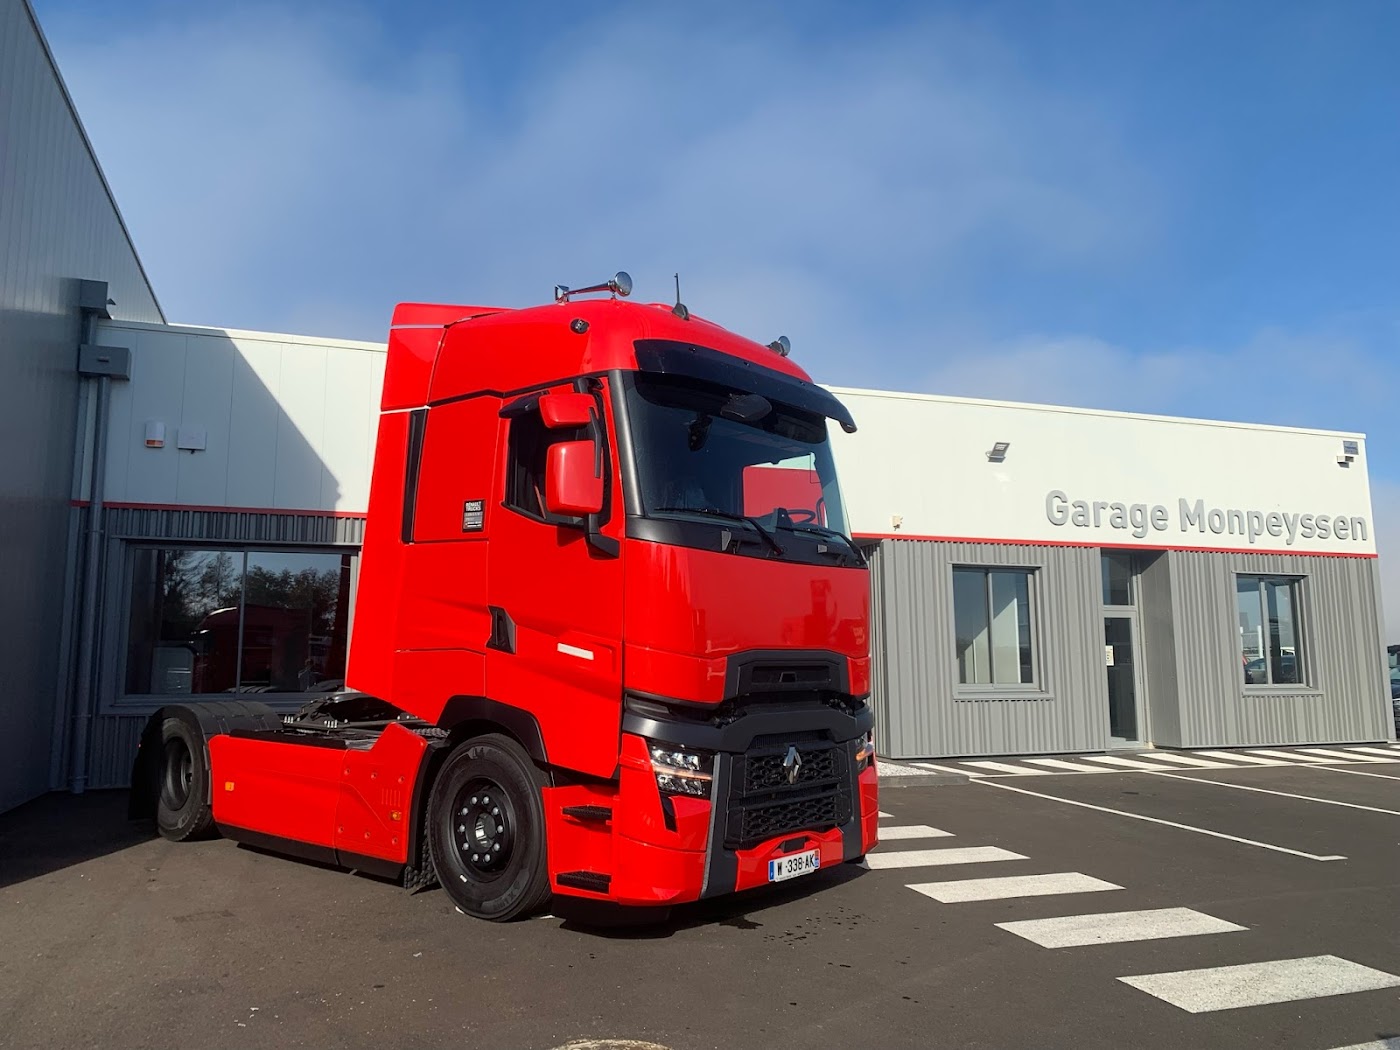 Renault Trucks - Garage Monpeyssen